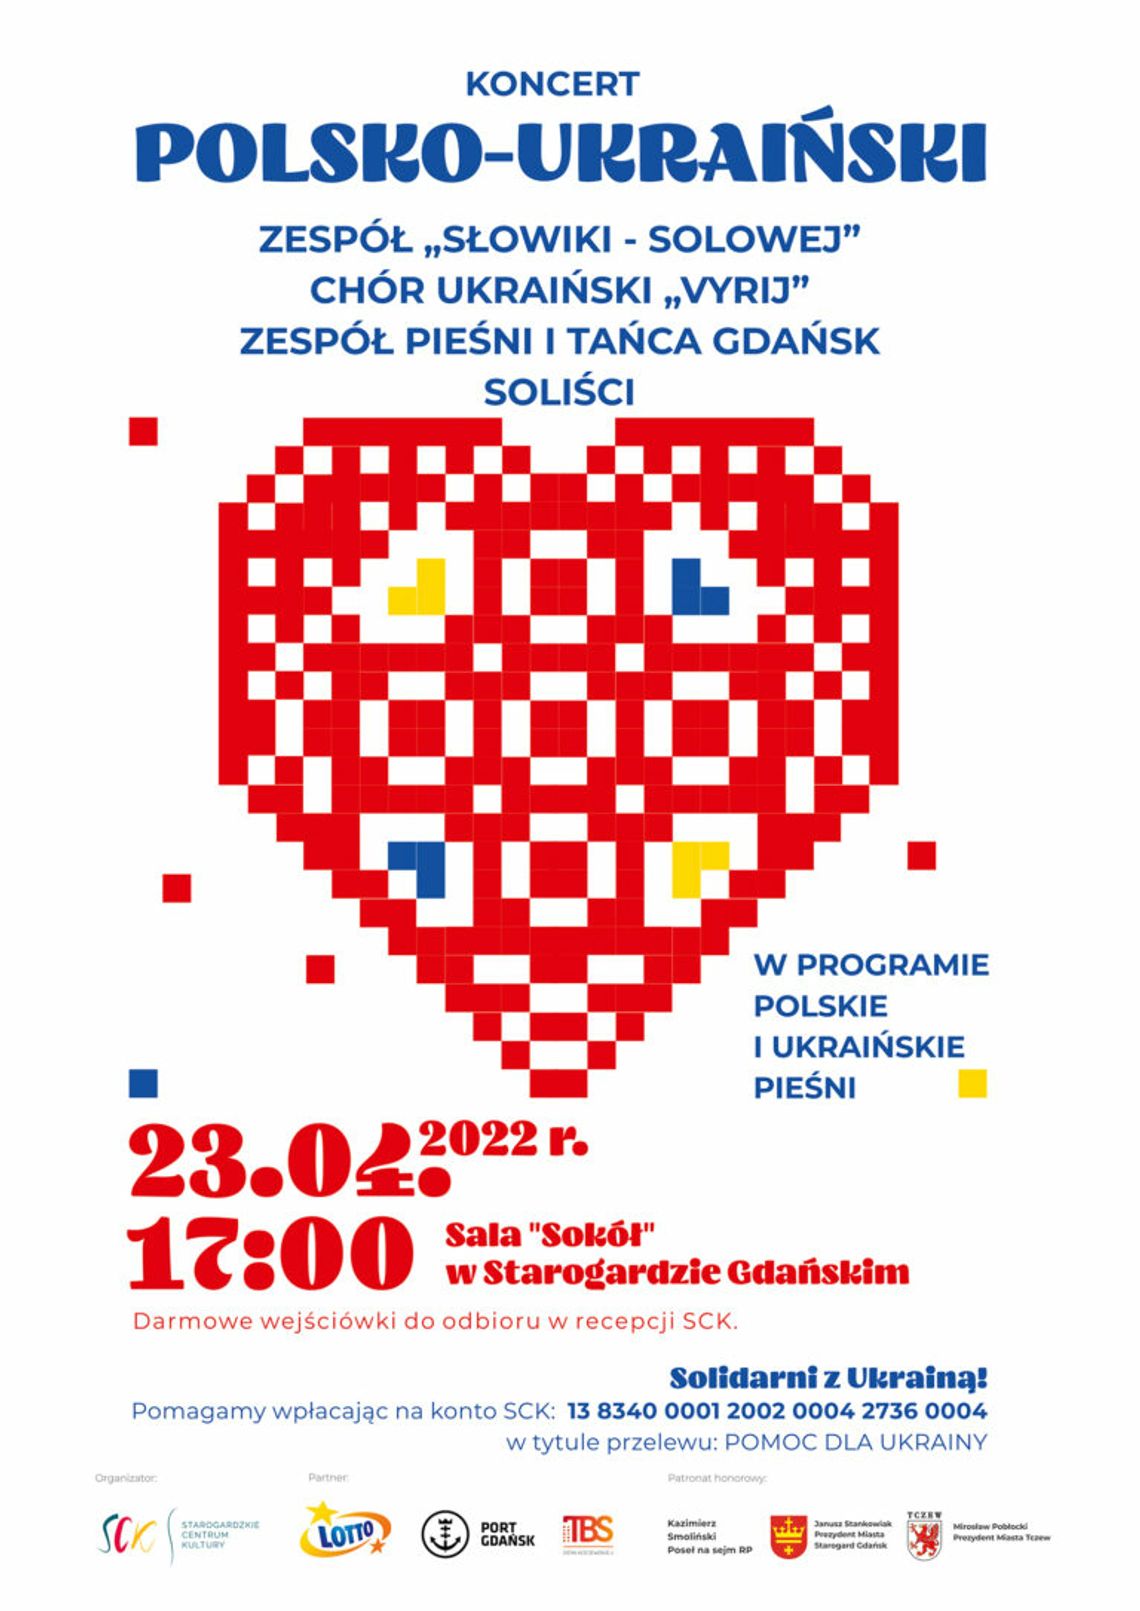 Wyjątkowy koncert pieśni polskich i ukraińskich. Już 23 kwietnia w Starogardzie Gdańskim